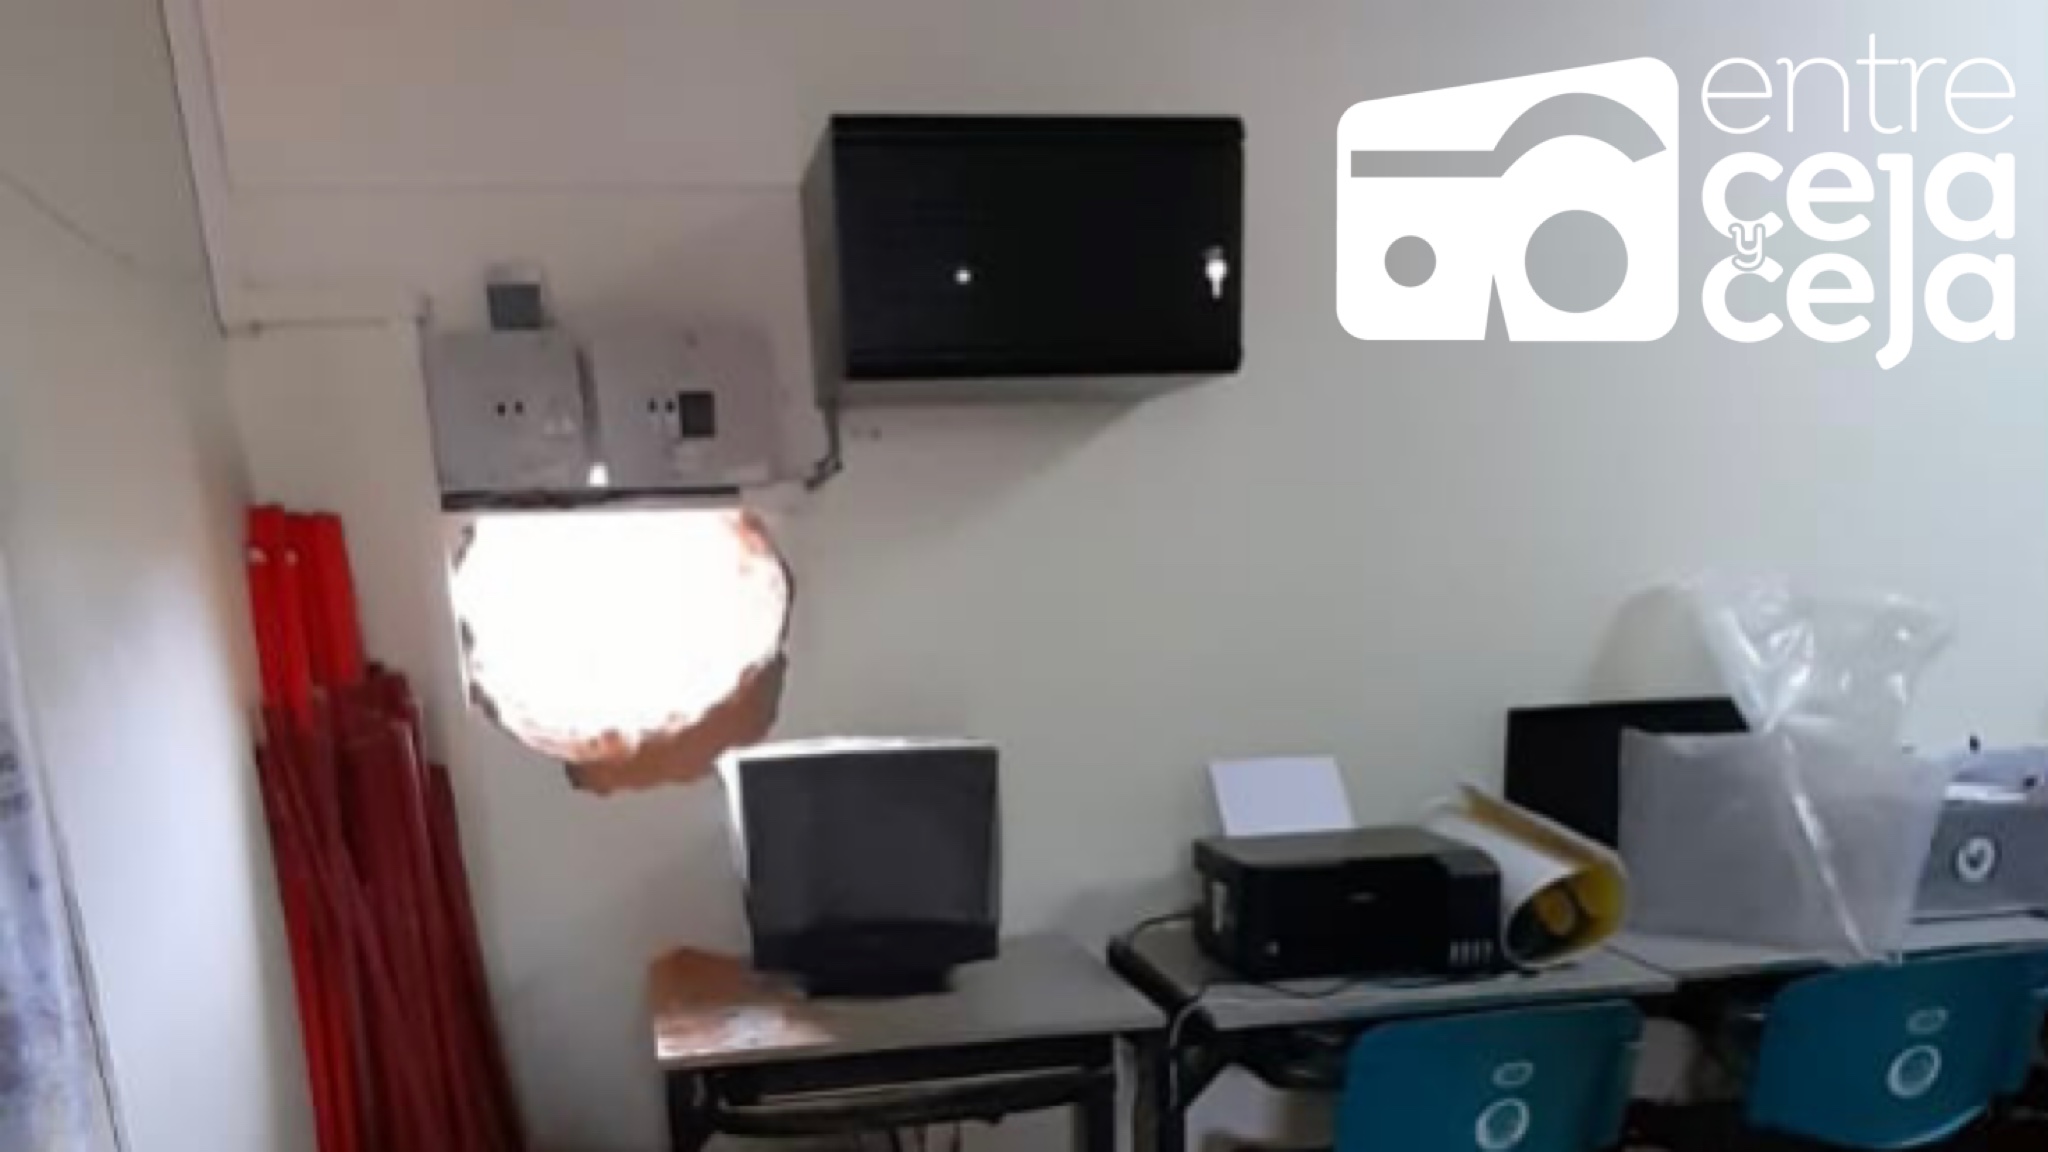 Ladrones abrieron un boquete en la pared y se robaron 4 computadores de escuela en San Vicente.